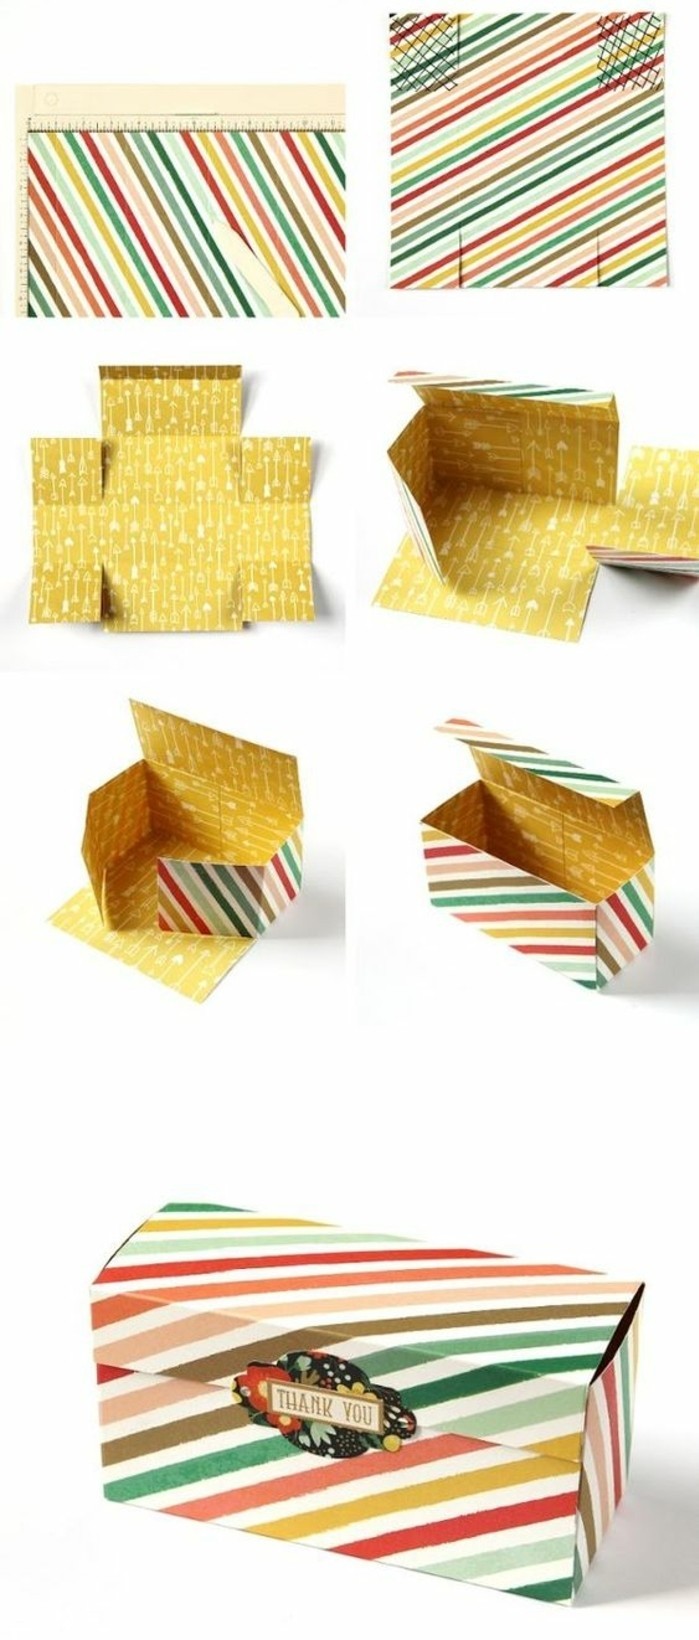 idee-comment-fabriquer-une-boite-en-carton-carton-a-rayures-pliage-origami-a-faire-soi-meme-boite-a-cadeau-remeciement